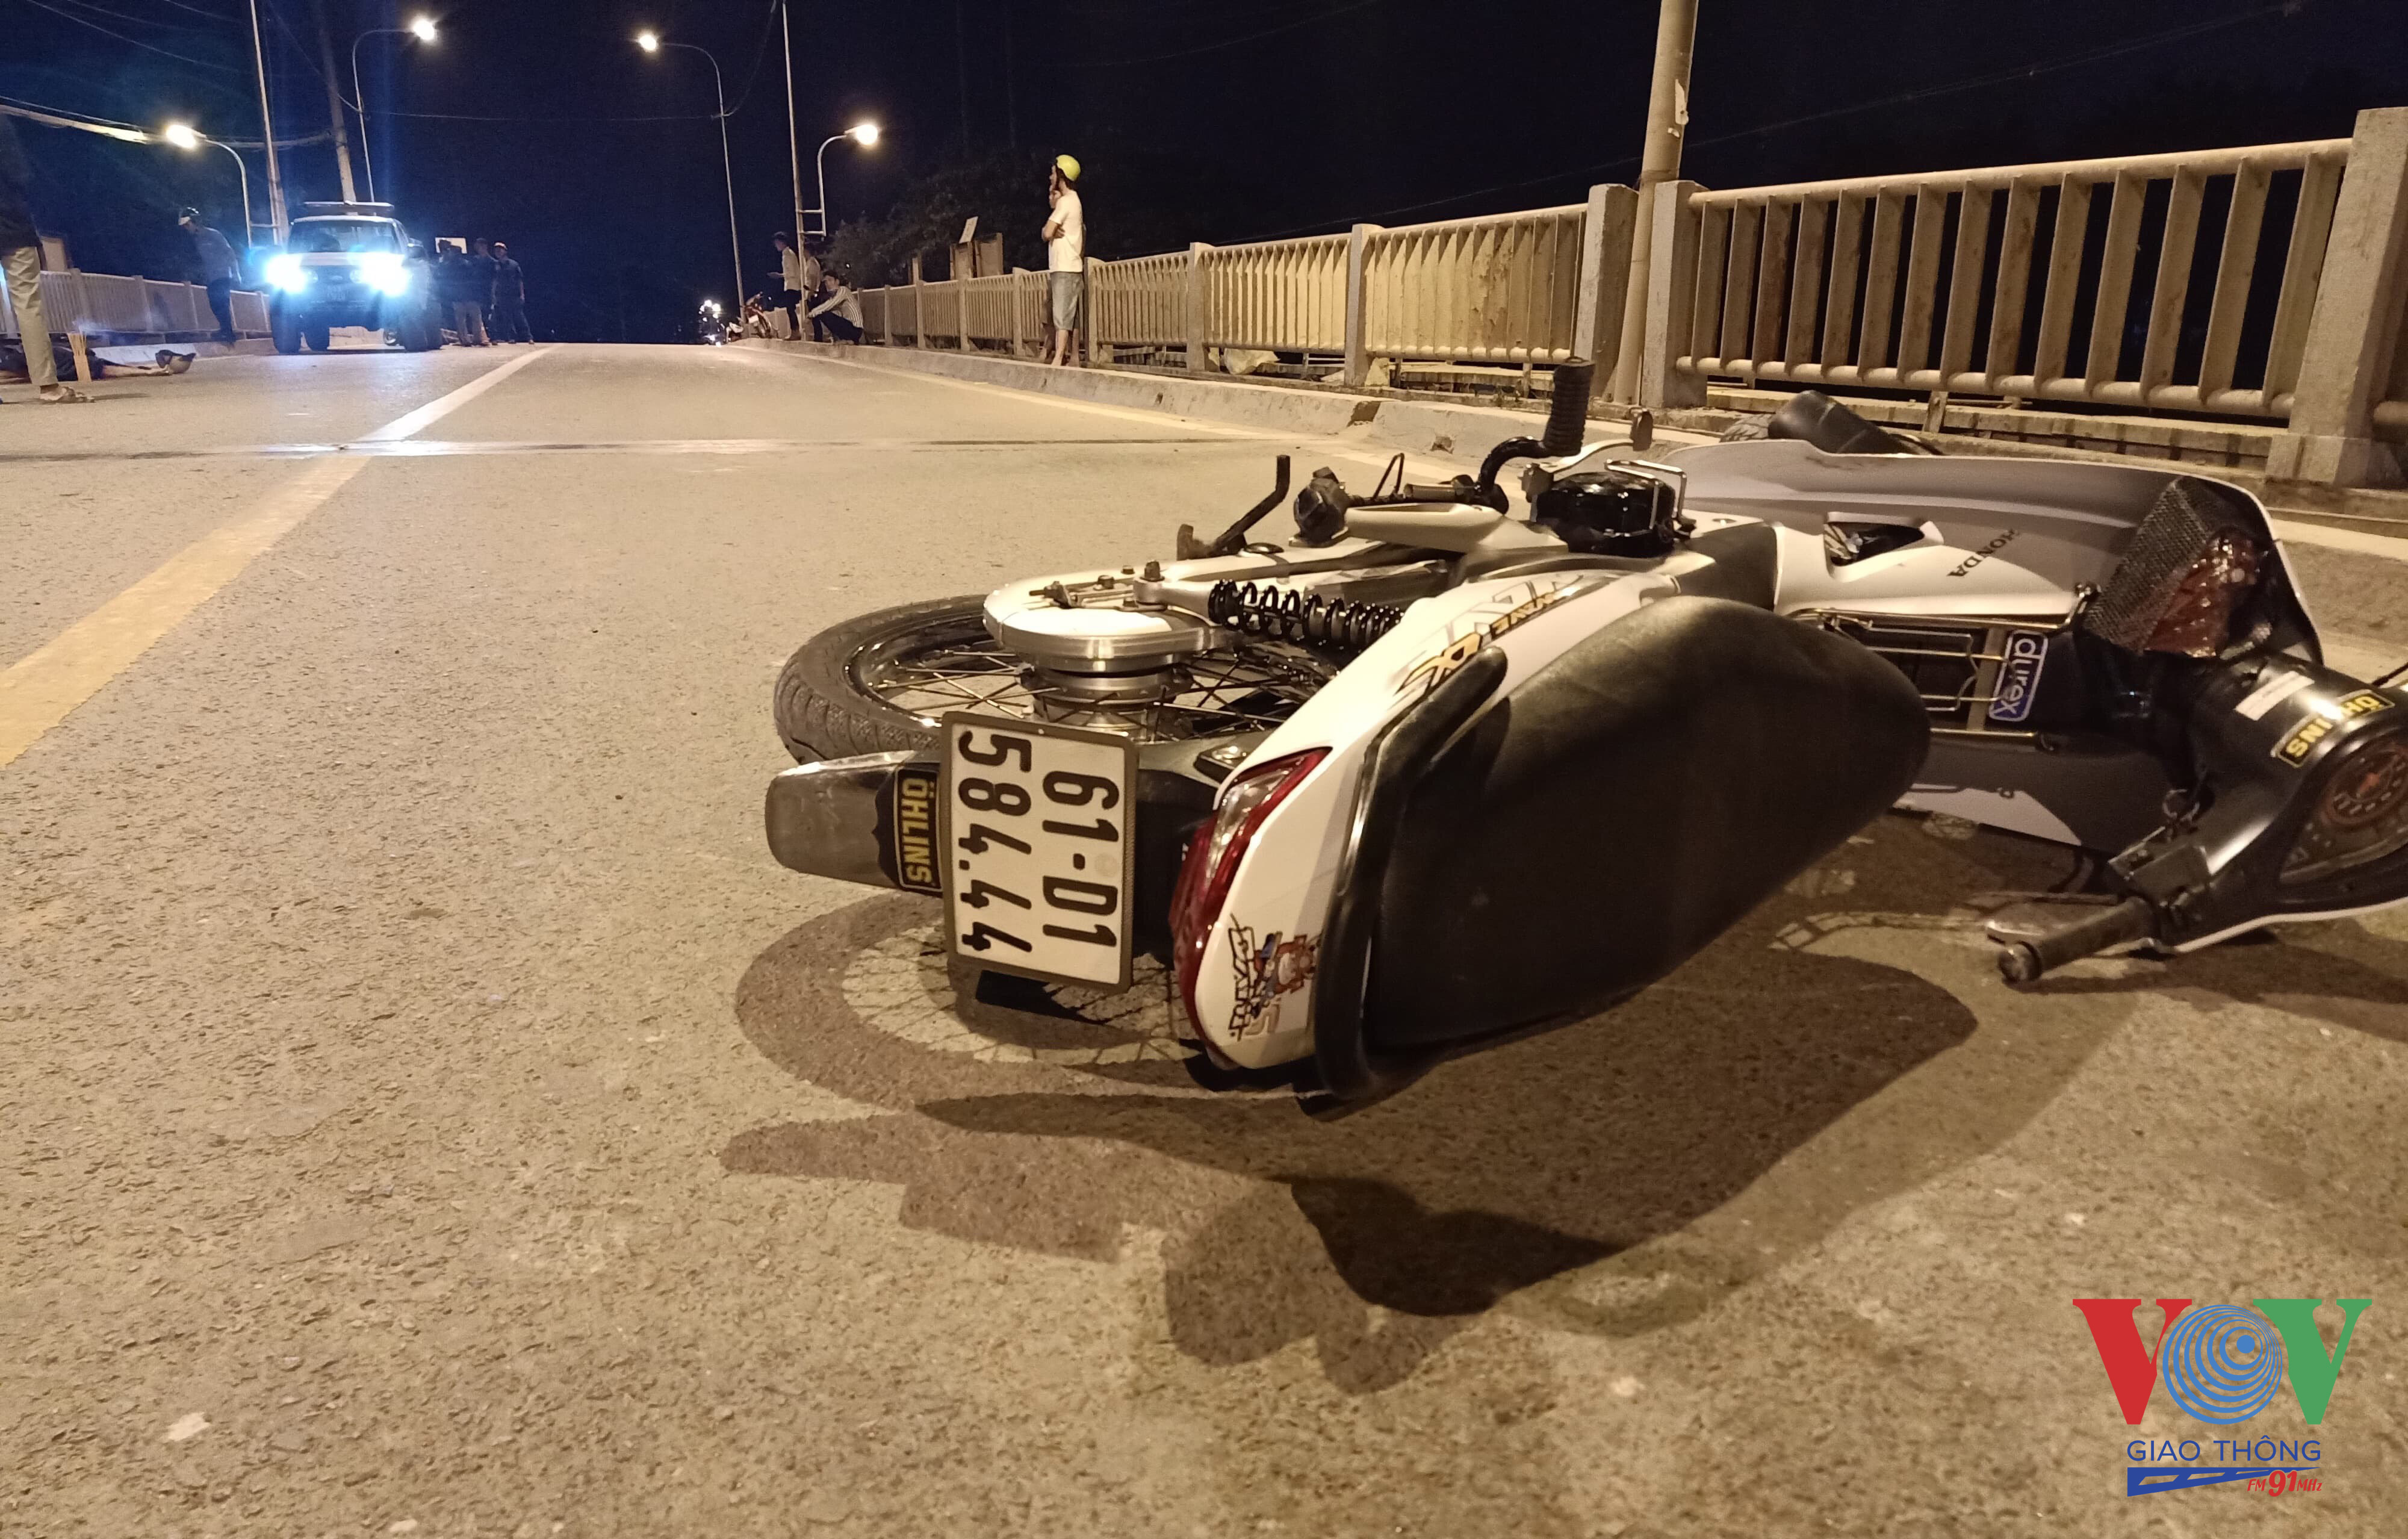 Chiếc xe máy và thi thể nạn nhân nằm cách xa nhau hơn 10 mét.